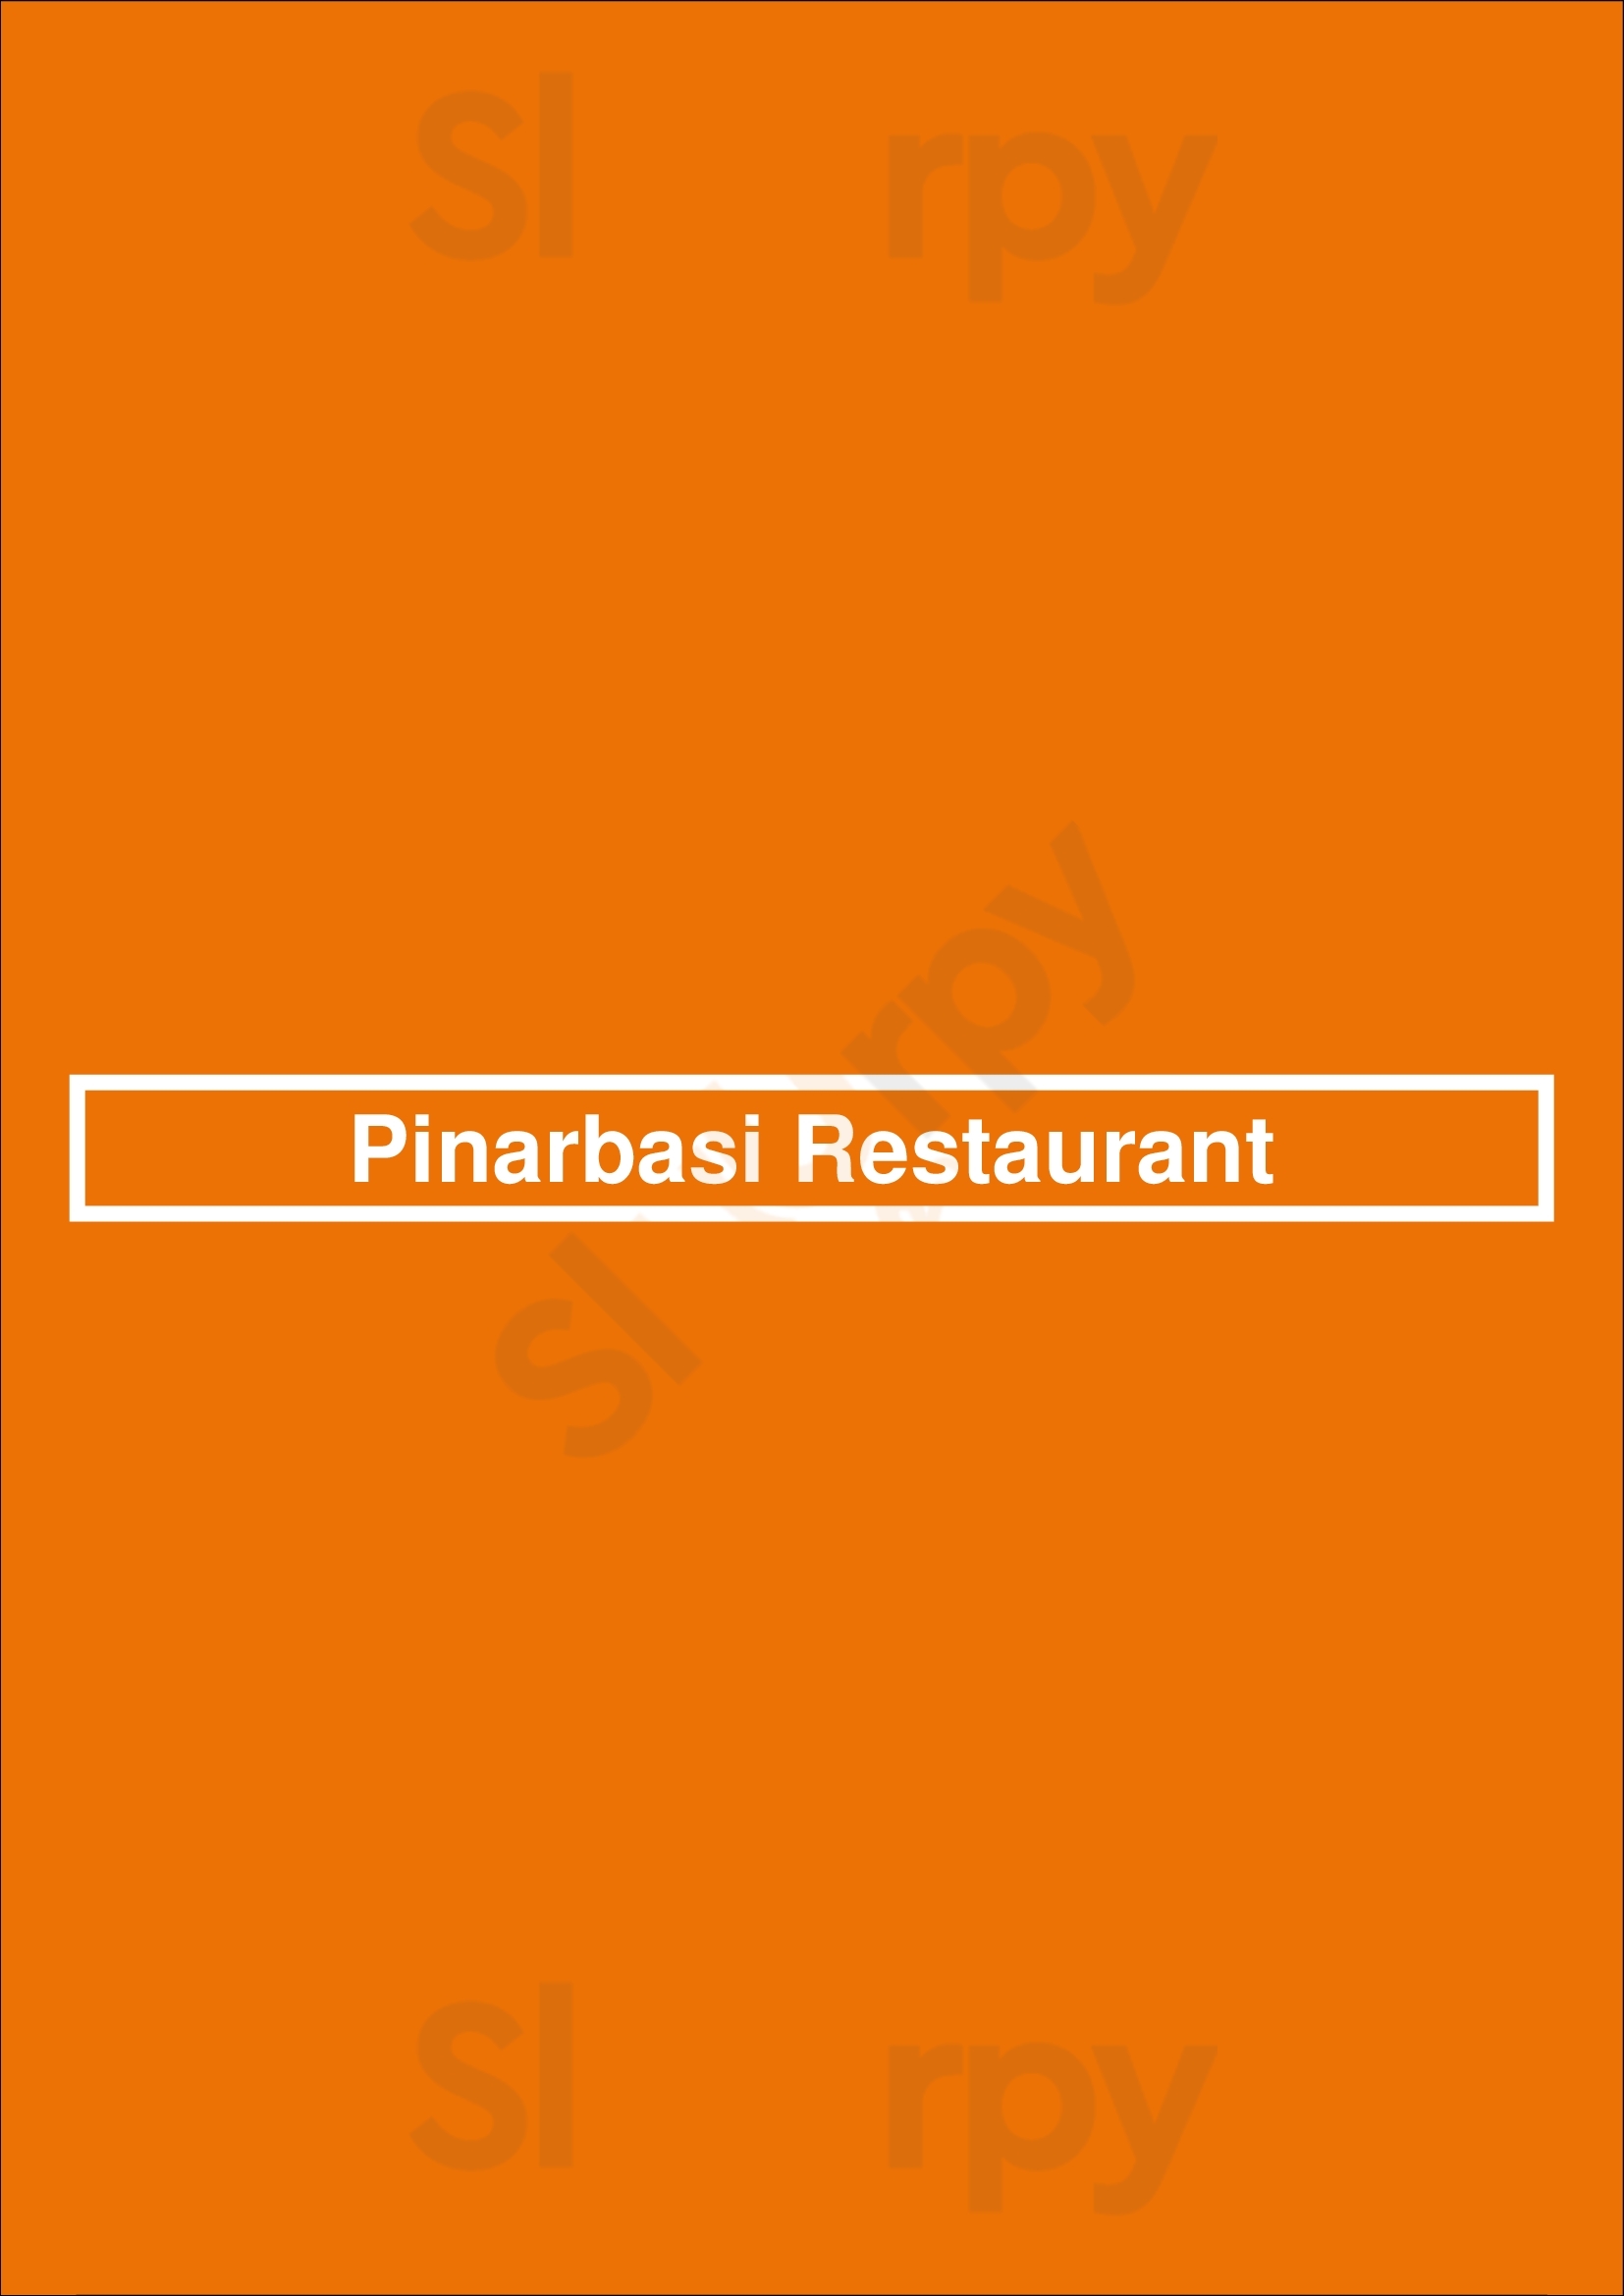 Pinarbasi Restaurant Coburg Menu - 1